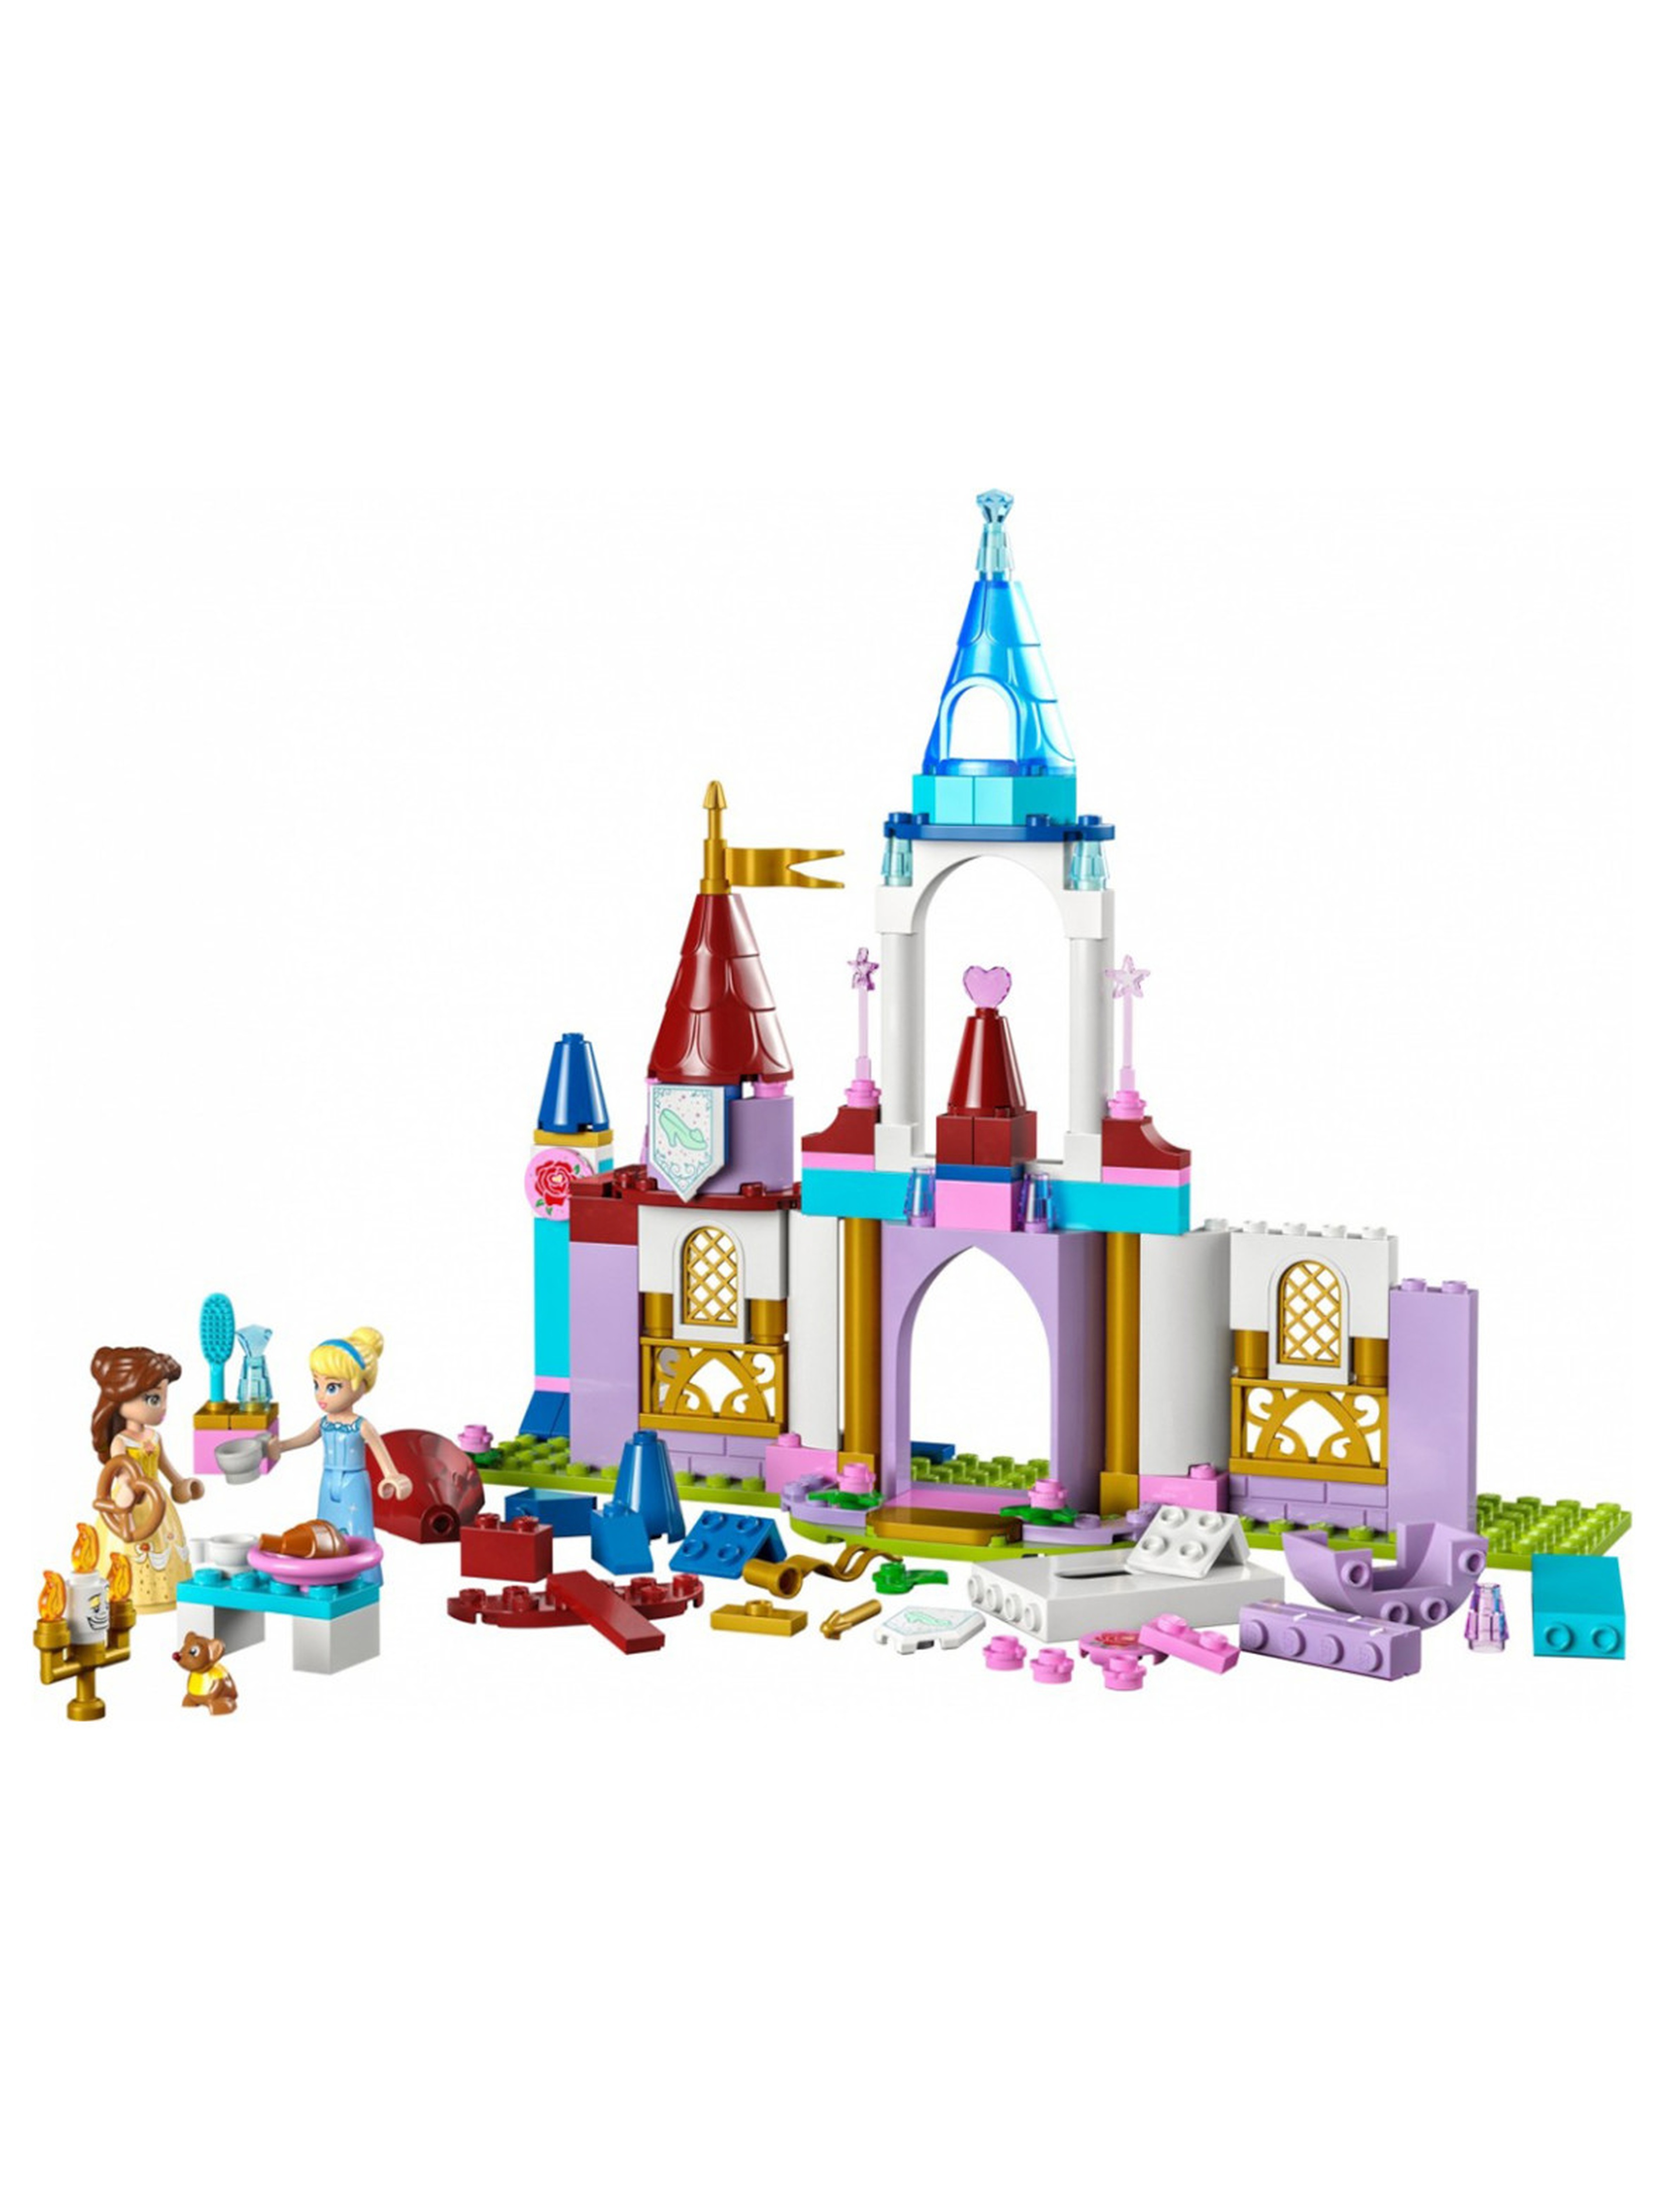 Klocki LEGO Disney Princess 43219 Kreatywne zamki księżniczek Disneya - 140 elementów, wiek 6 +